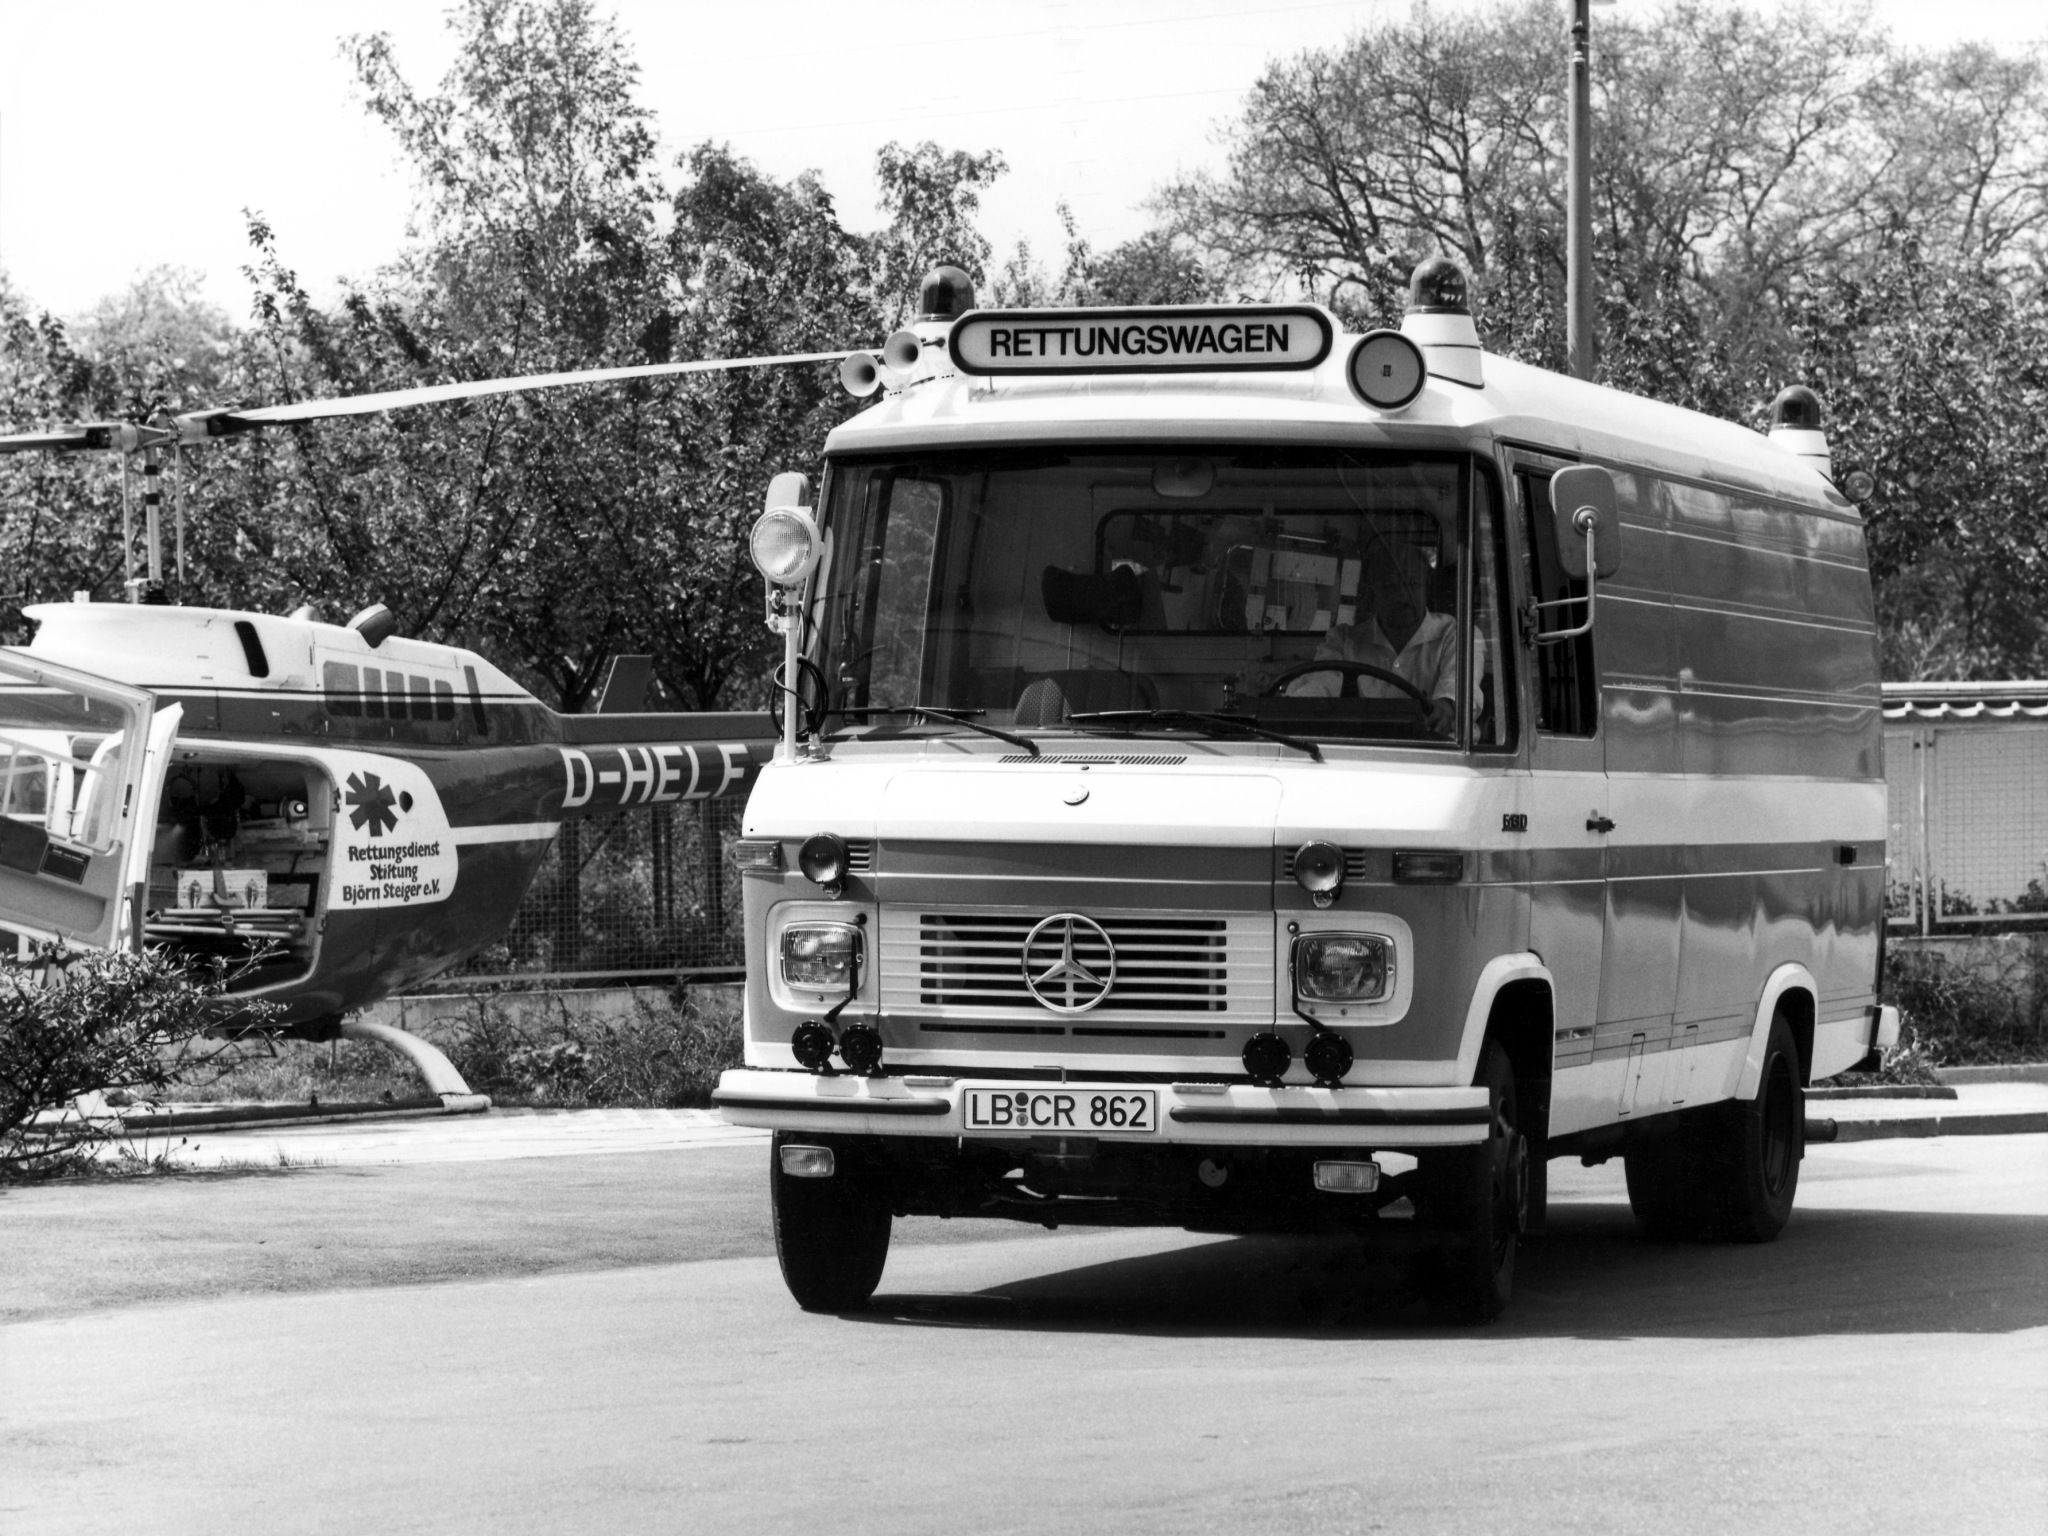 1977, Mercedes, Benz, L613d, Rettungswagen, 310, Ambulance, Emergency Wallpaper